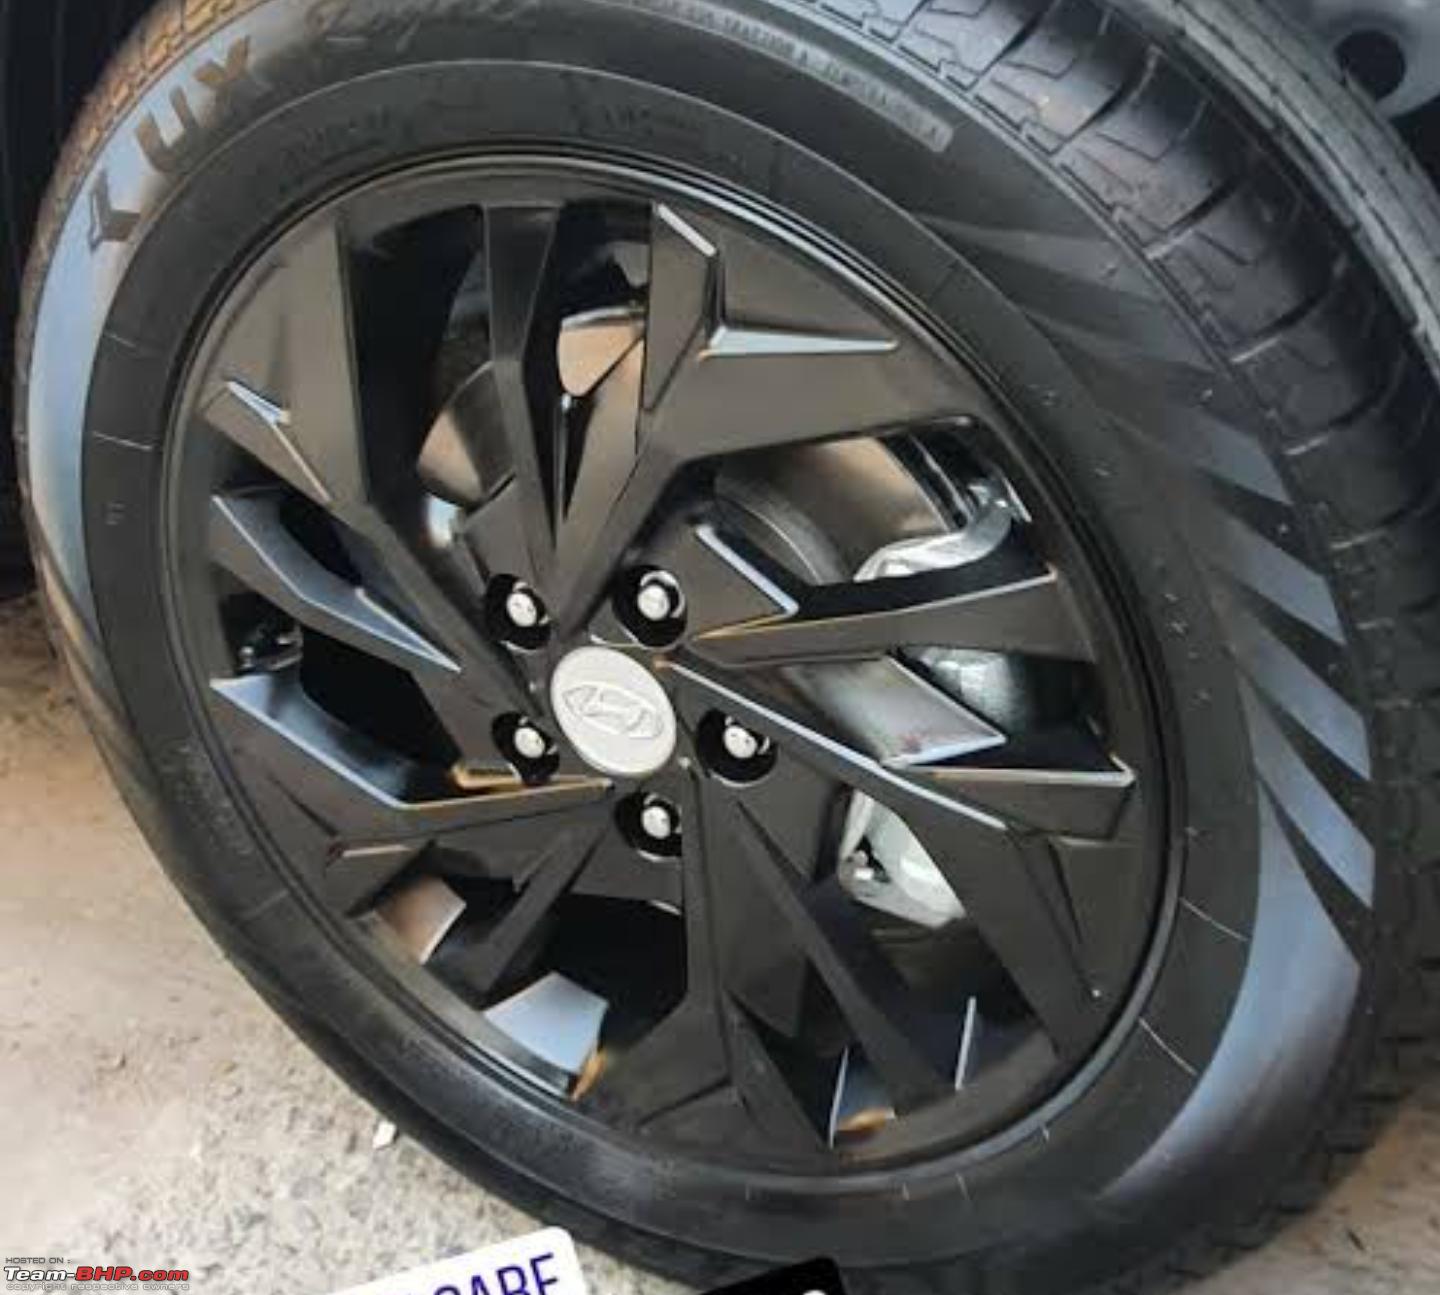 Matte Black Rim Touch Up Paint for Cars, Black Wheel Paint Repair